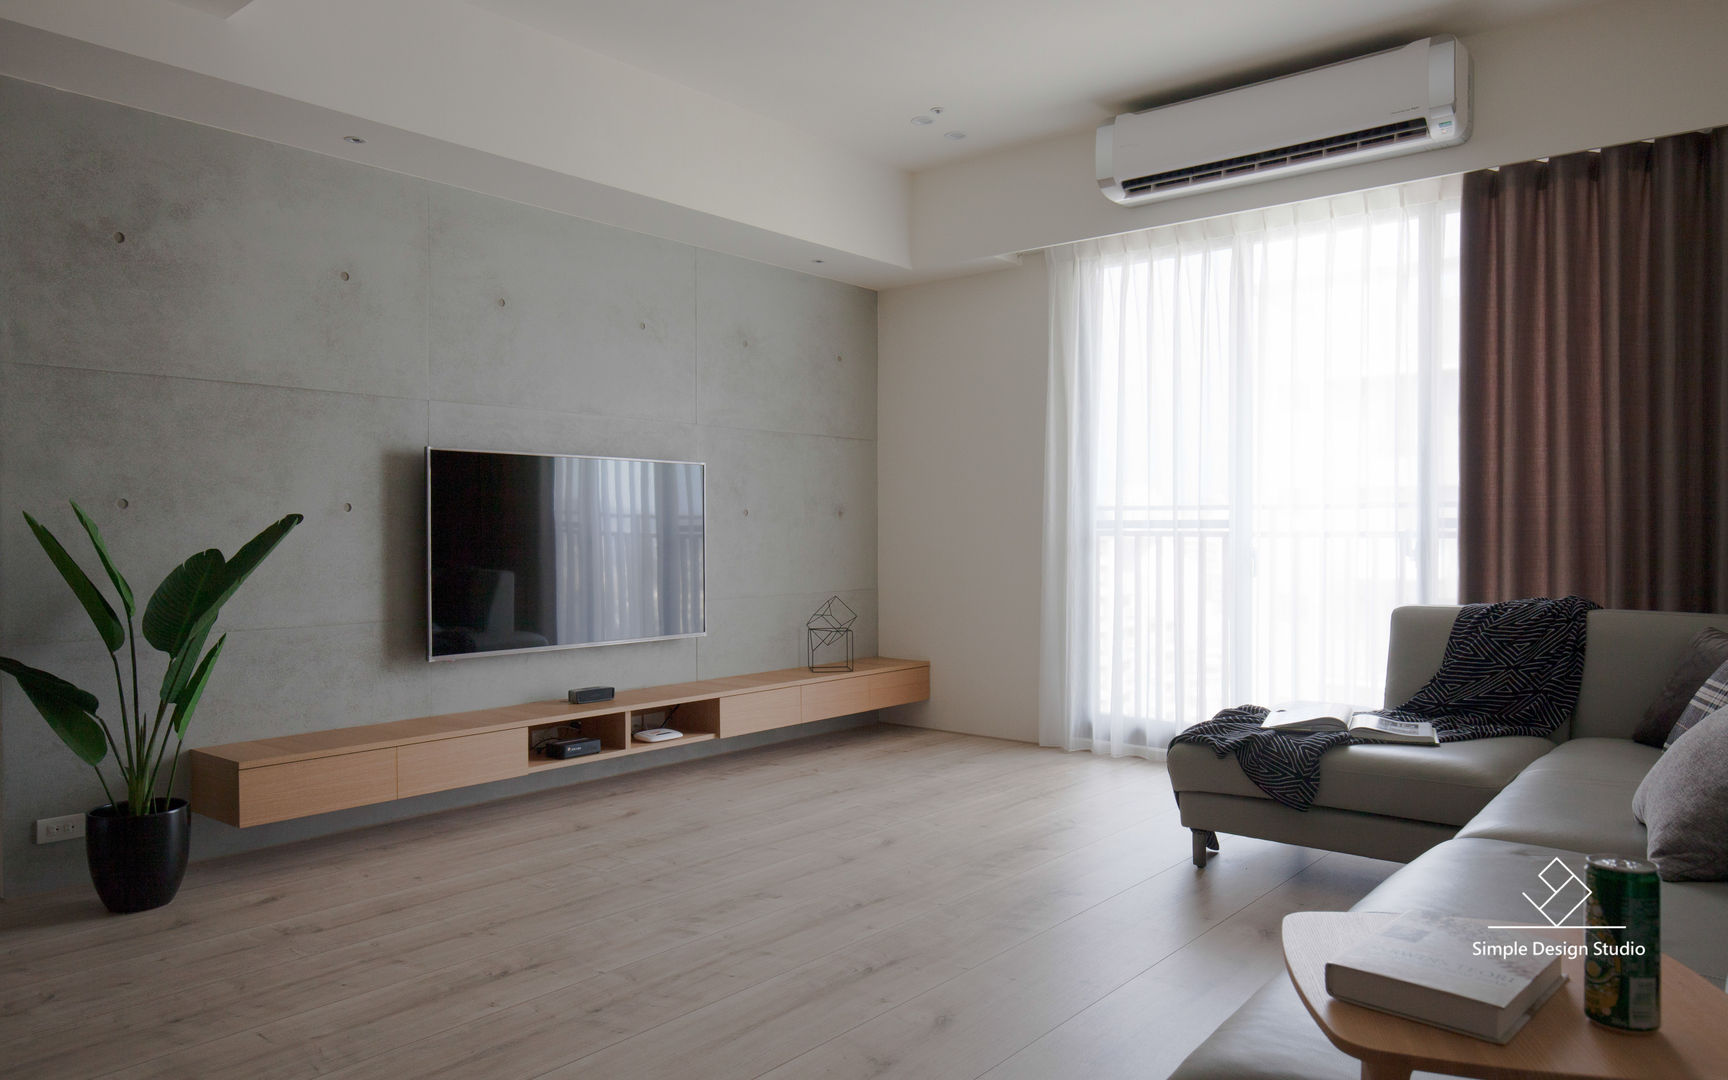 客廳 極簡室內設計 Simple Design Studio 客廳 客廳,清水模,電視牆